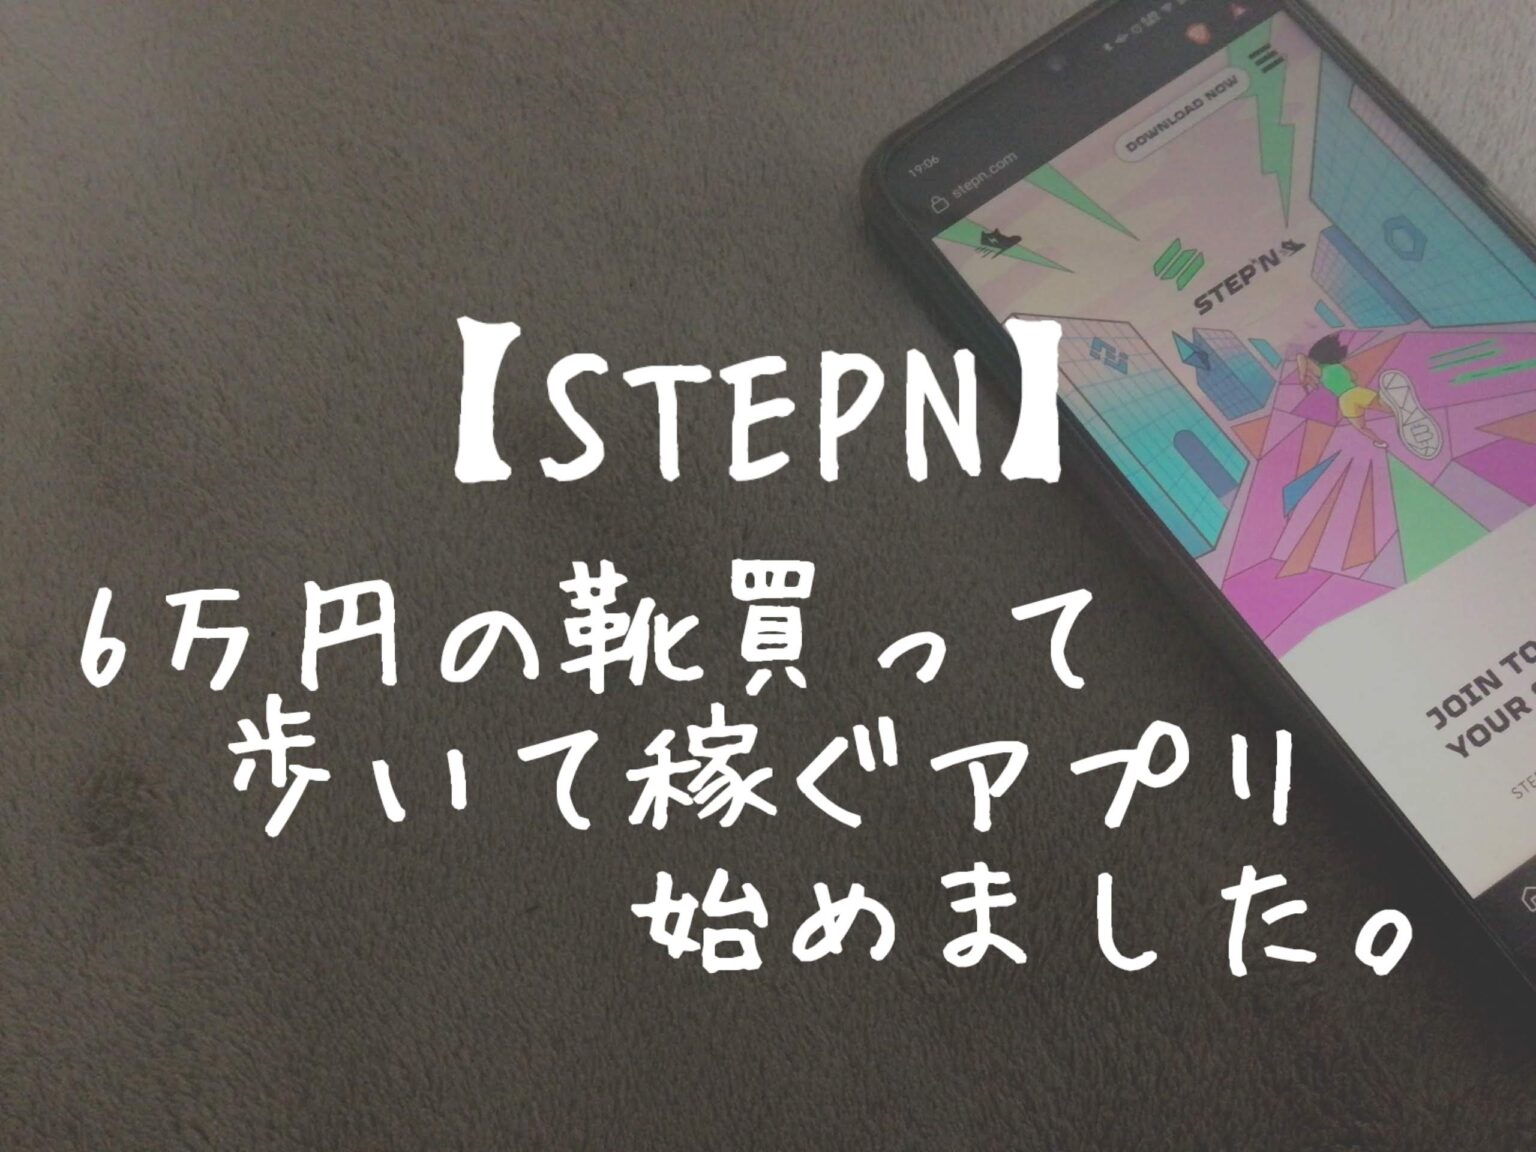 【STEPN】6万円の靴を買って歩いて稼ぐアプリ始めました。